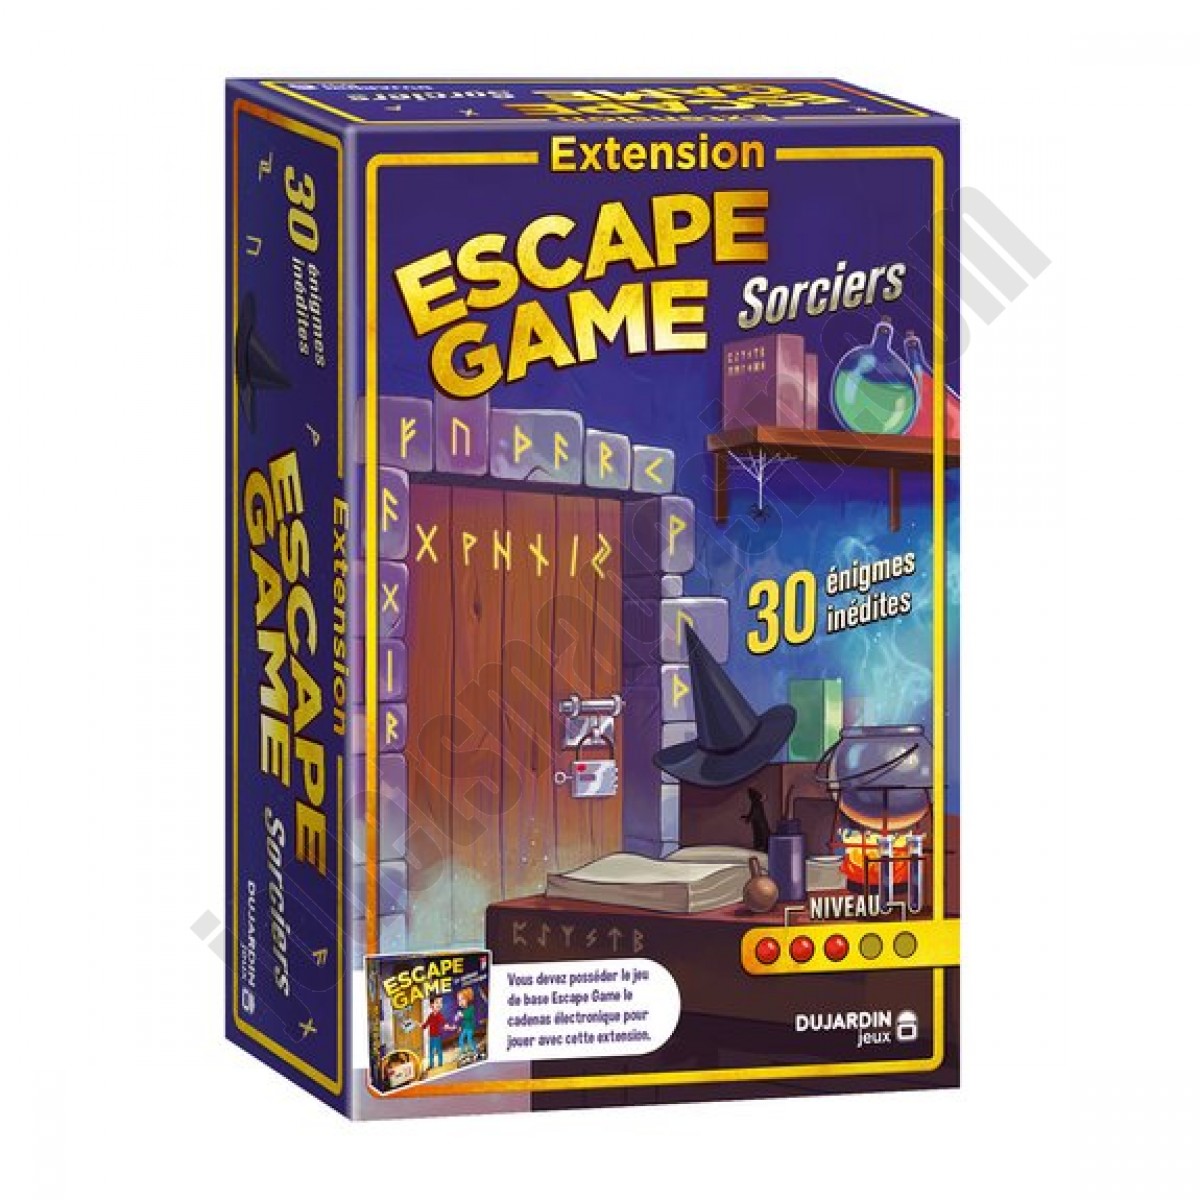 Escape Game Extension Sorciers ◆◆◆ Nouveau - Escape Game Extension Sorciers ◆◆◆ Nouveau